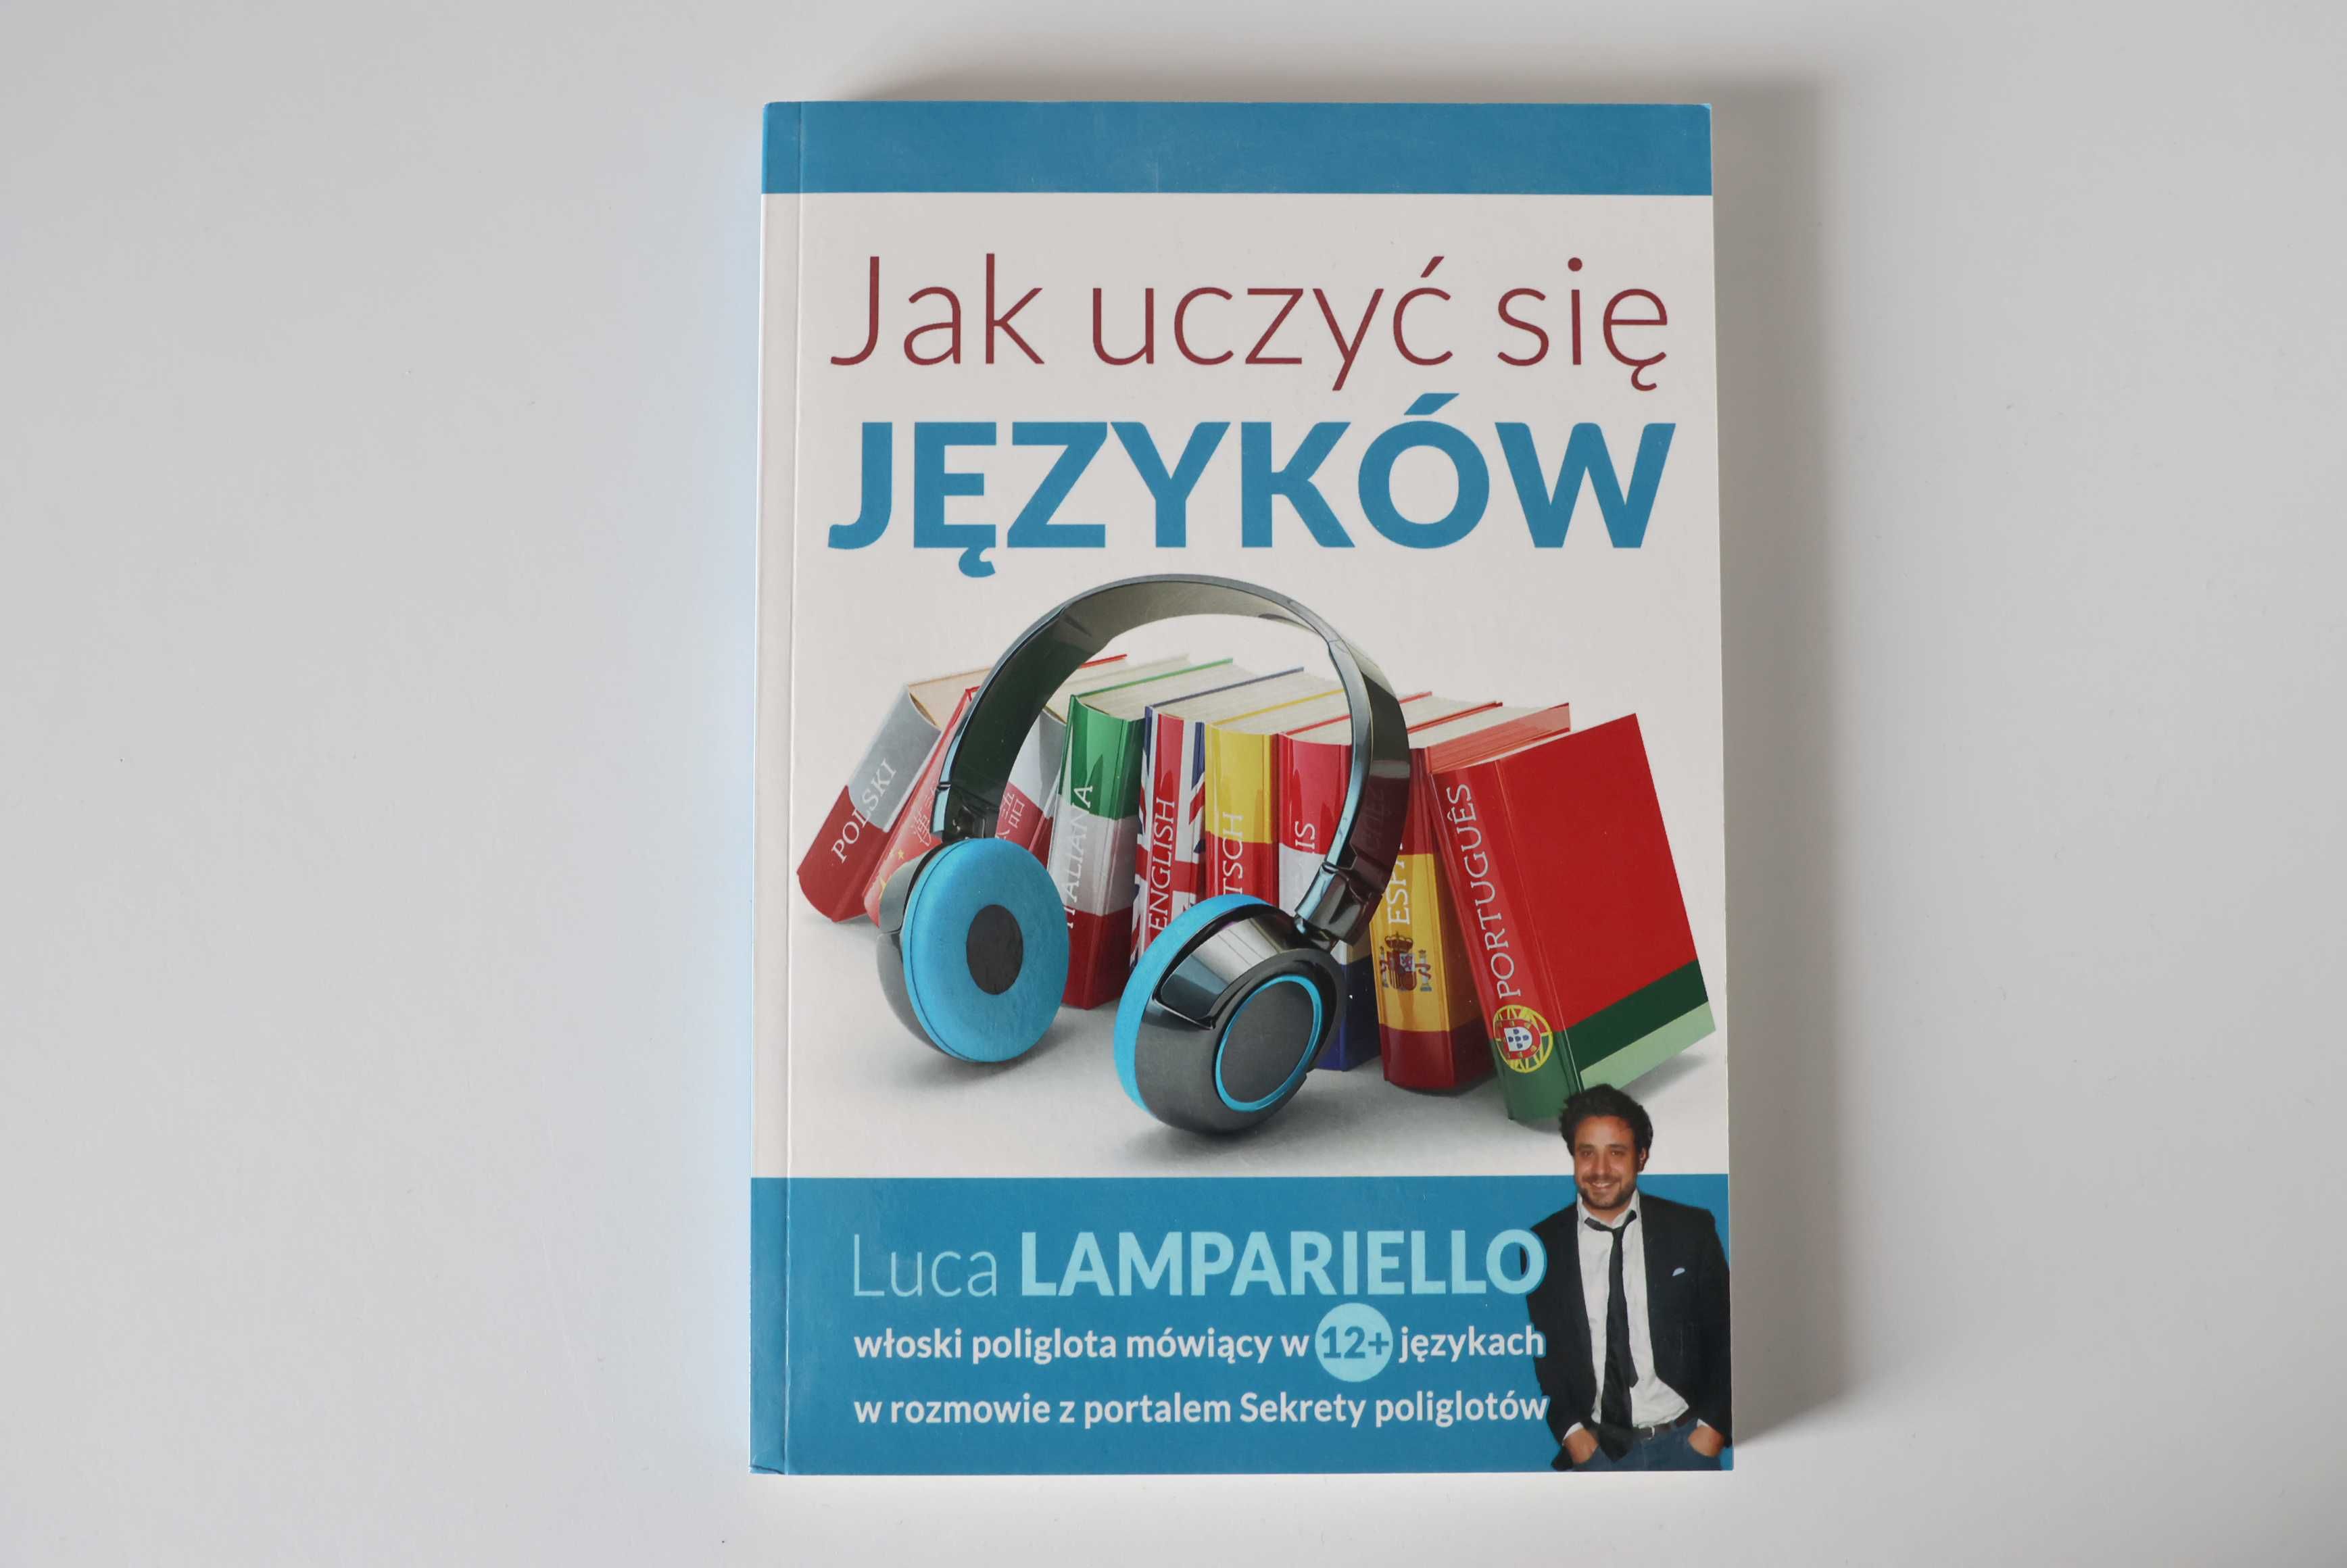 Jak uczyć się języków - Konrad Jerzak vel Dobosz, Luca Lampariello